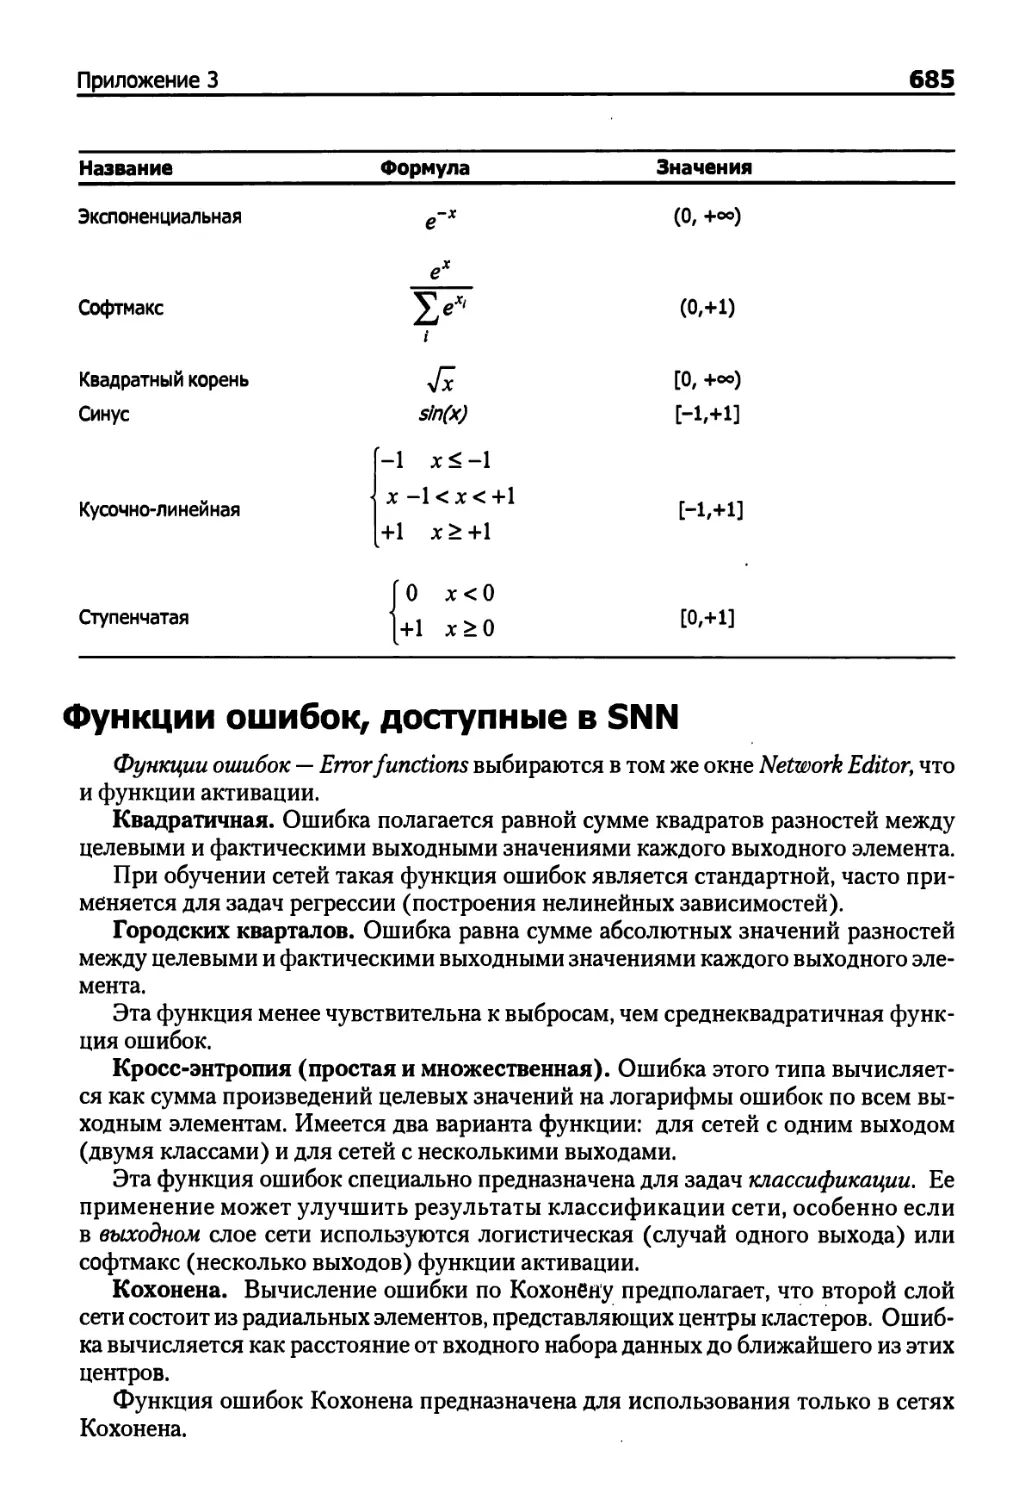 Функции ошибок, доступные в SNN